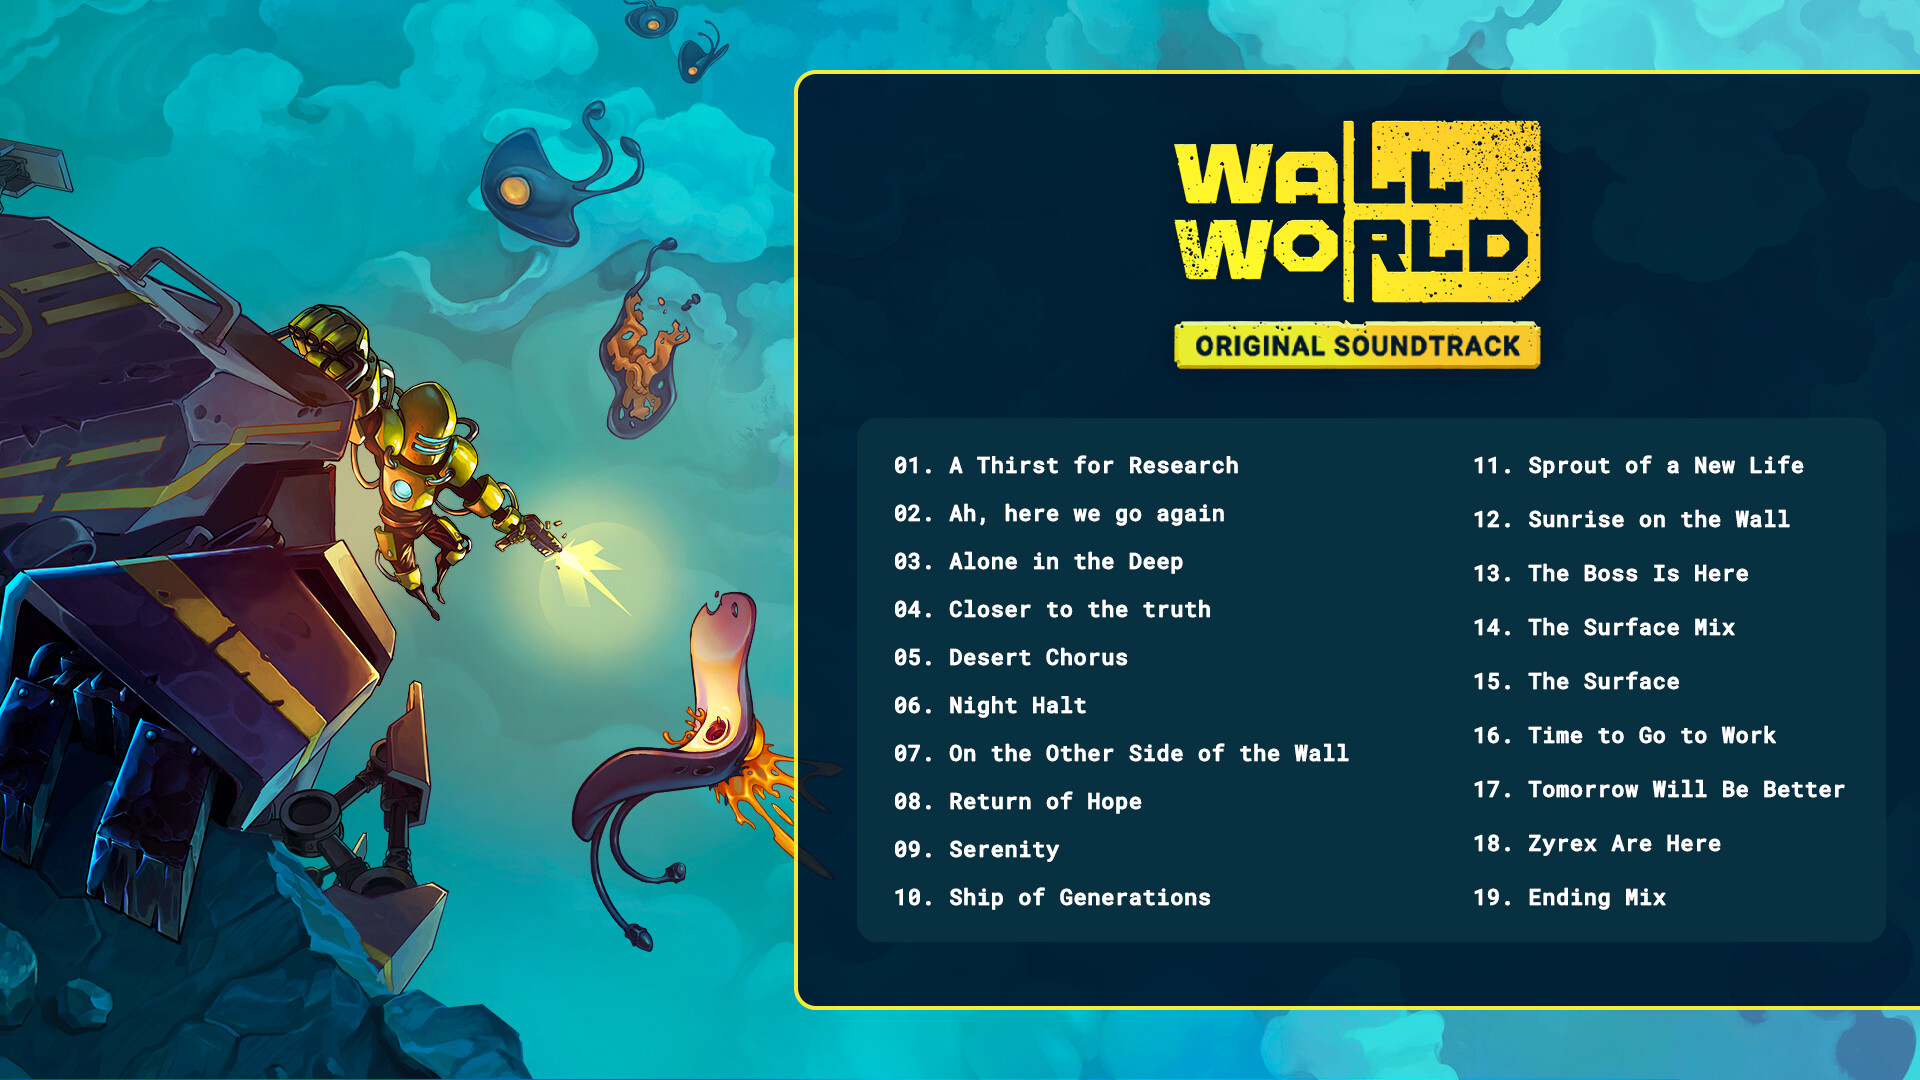 Wall World Original Soundtrack Featured Screenshot #1